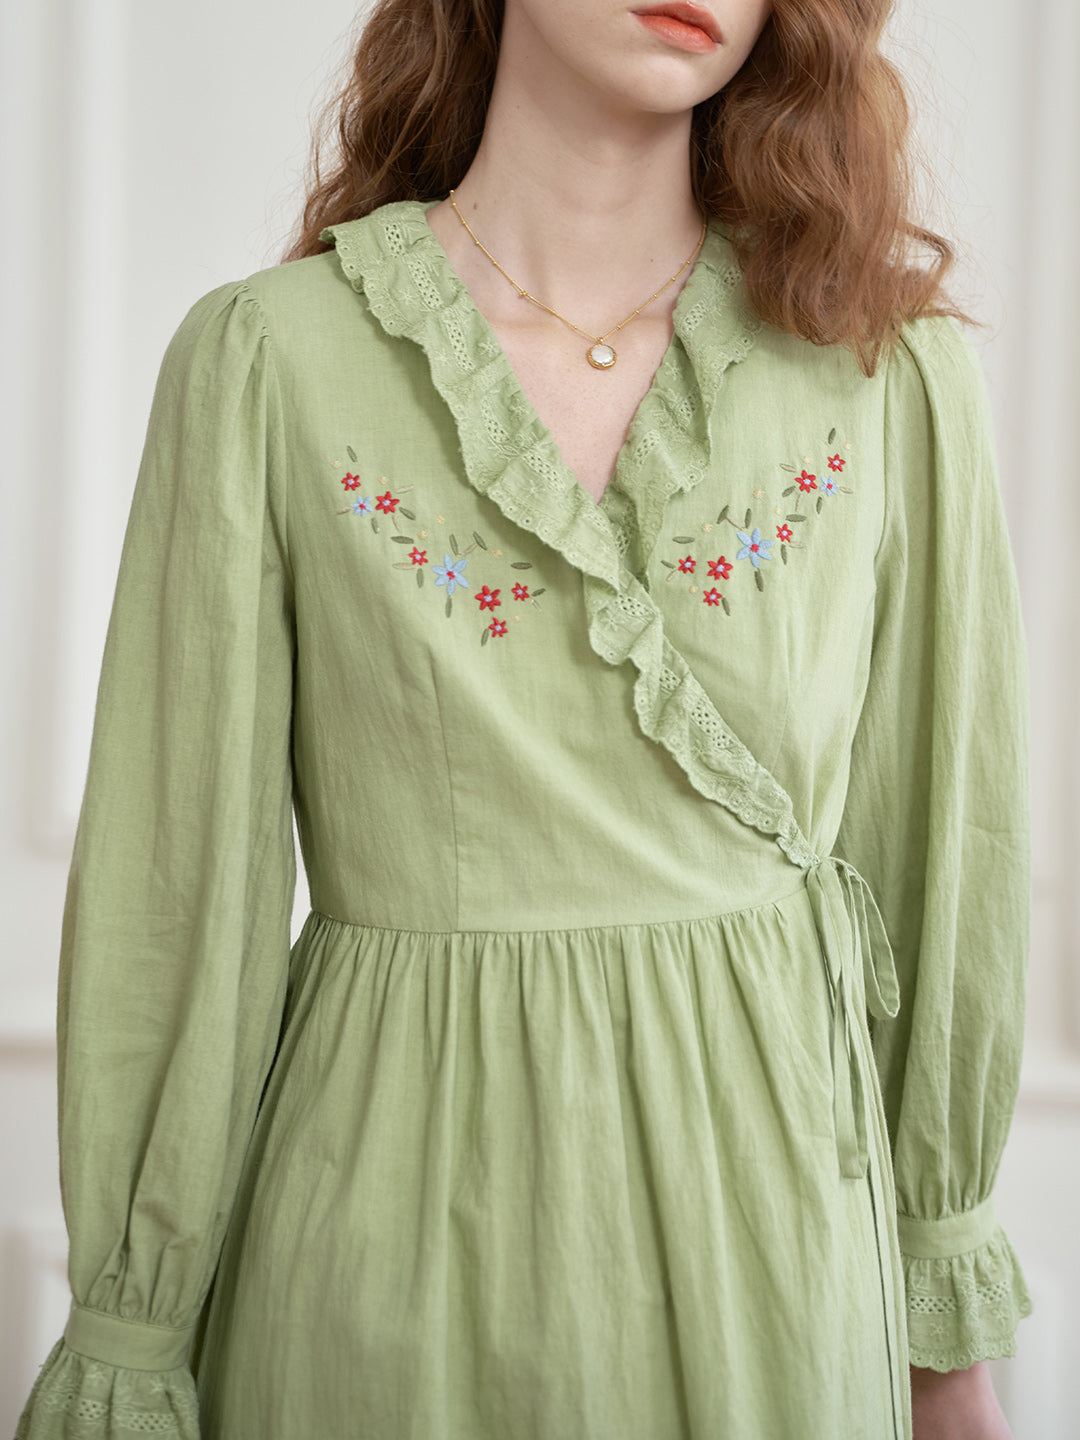 【Final Sale】Aubrie Floral Embroidery Lace Panel Cotton Dress